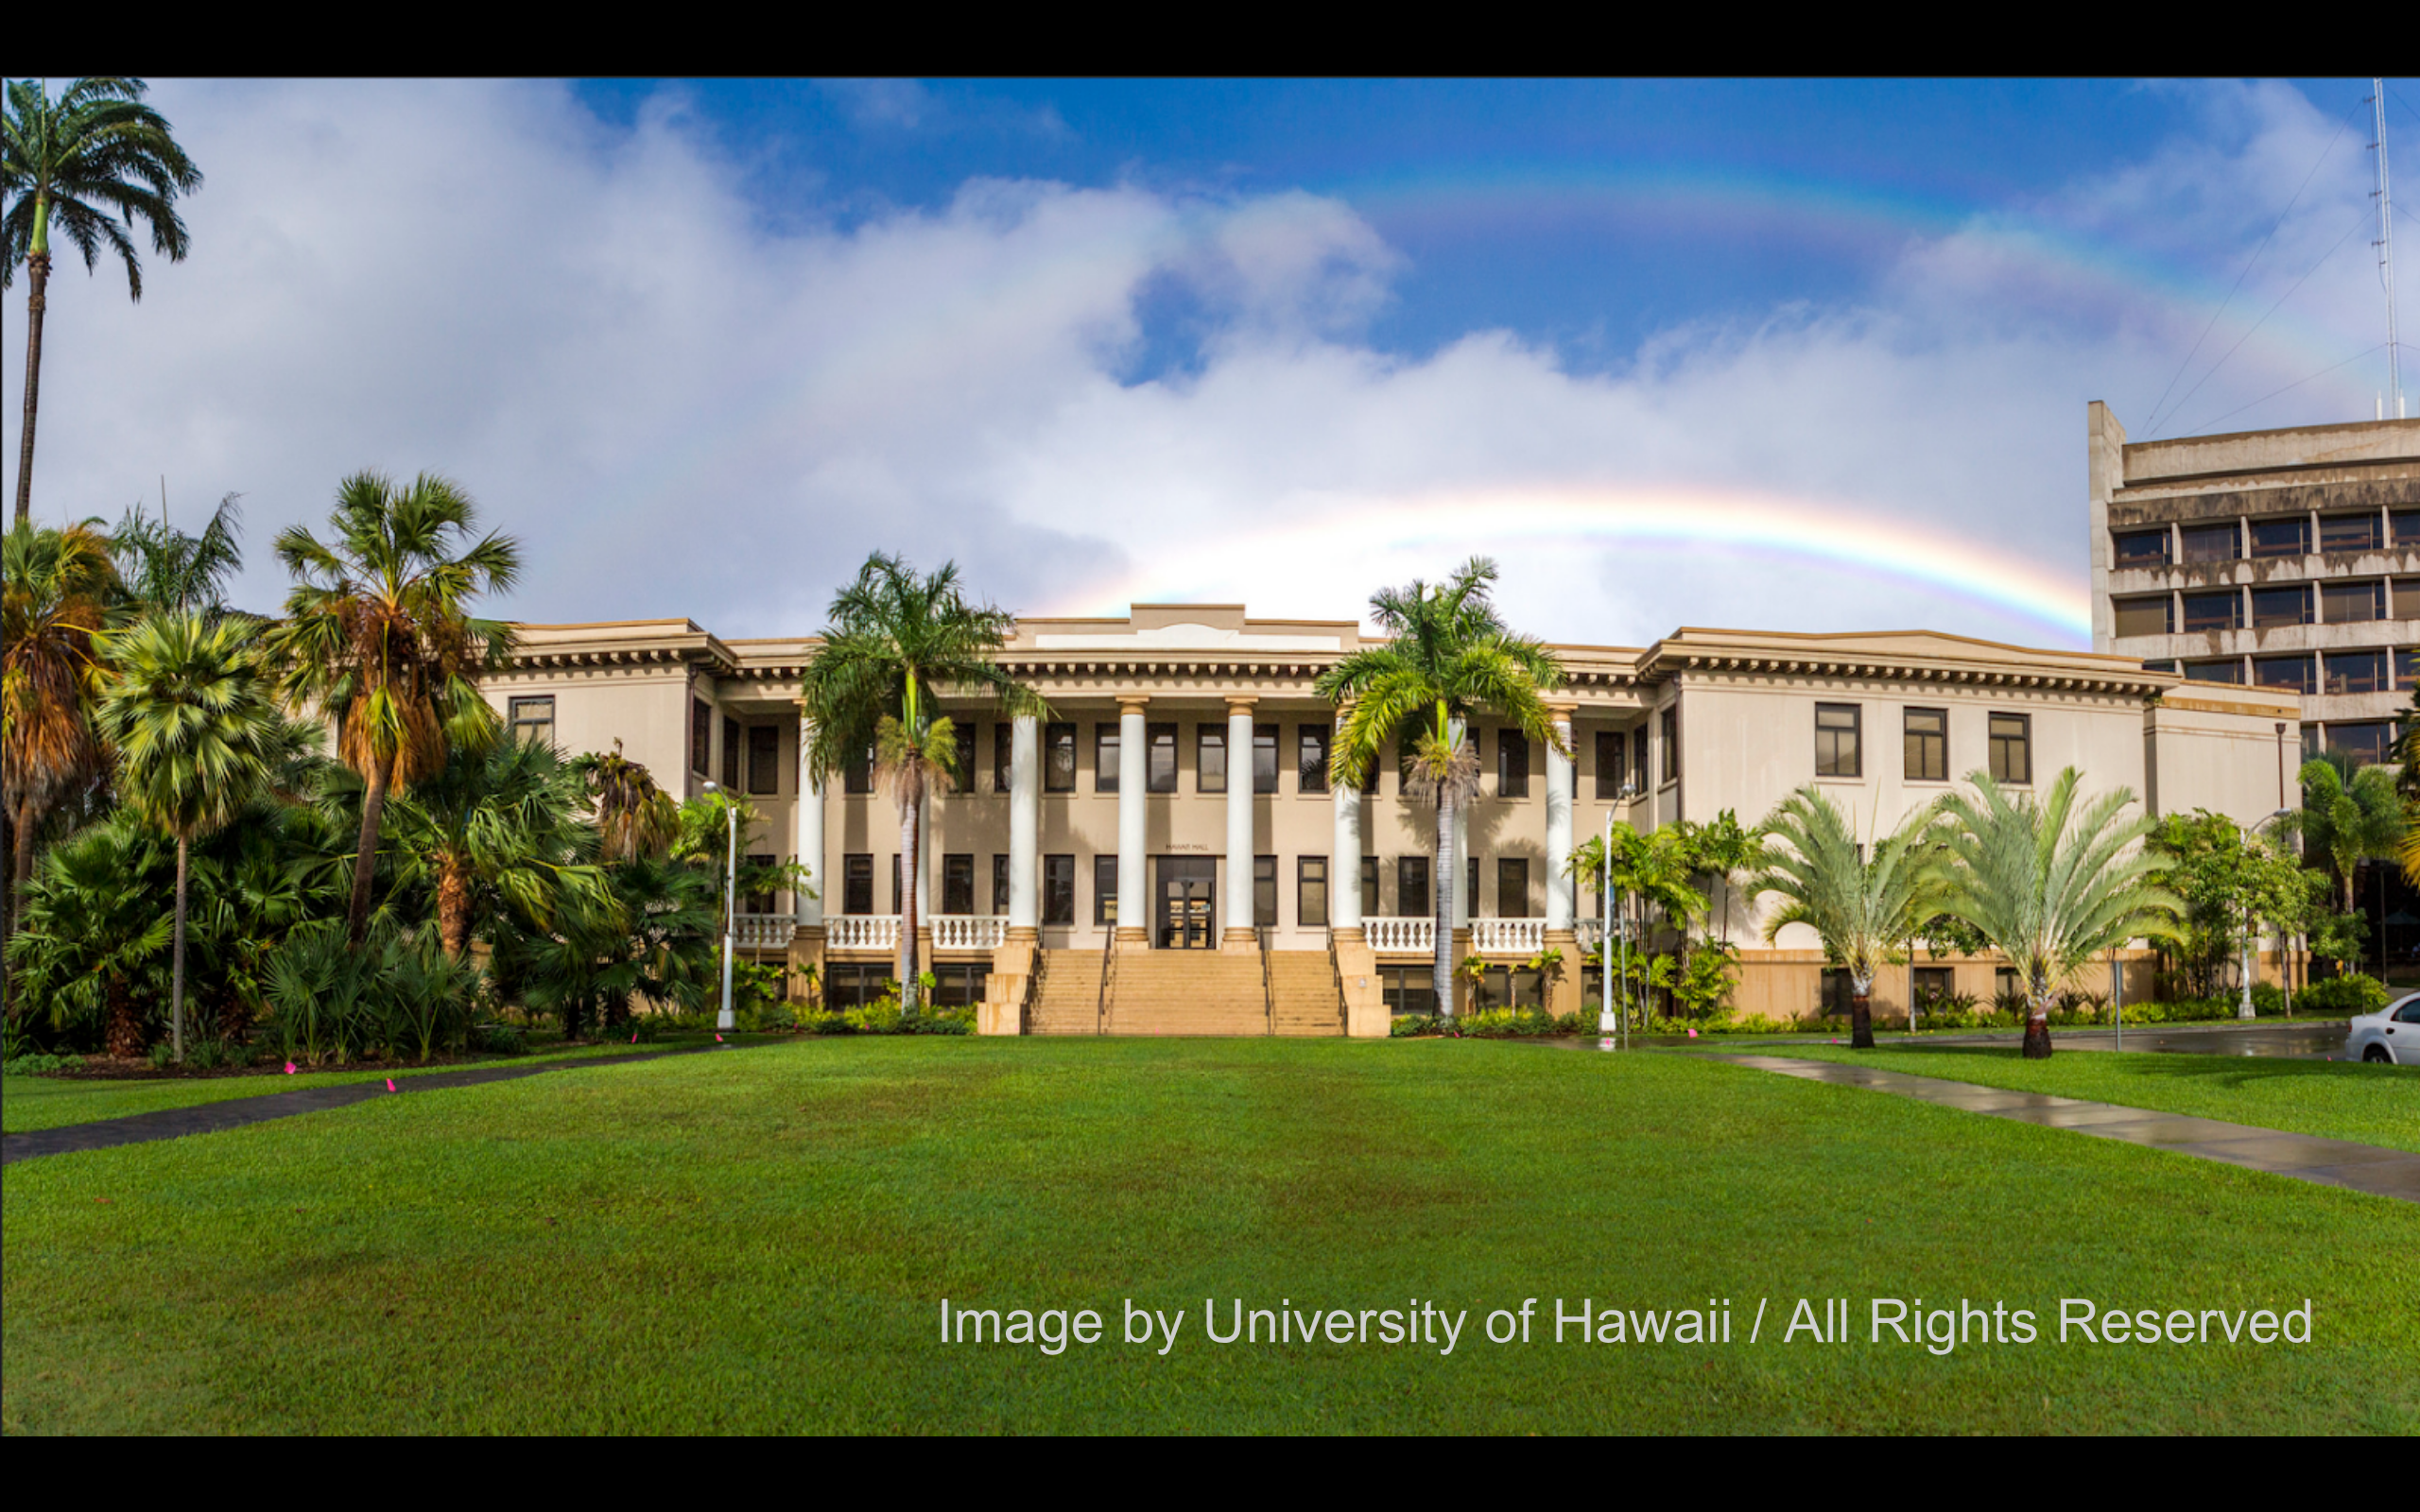 Hawaii Hall at UH Manoa